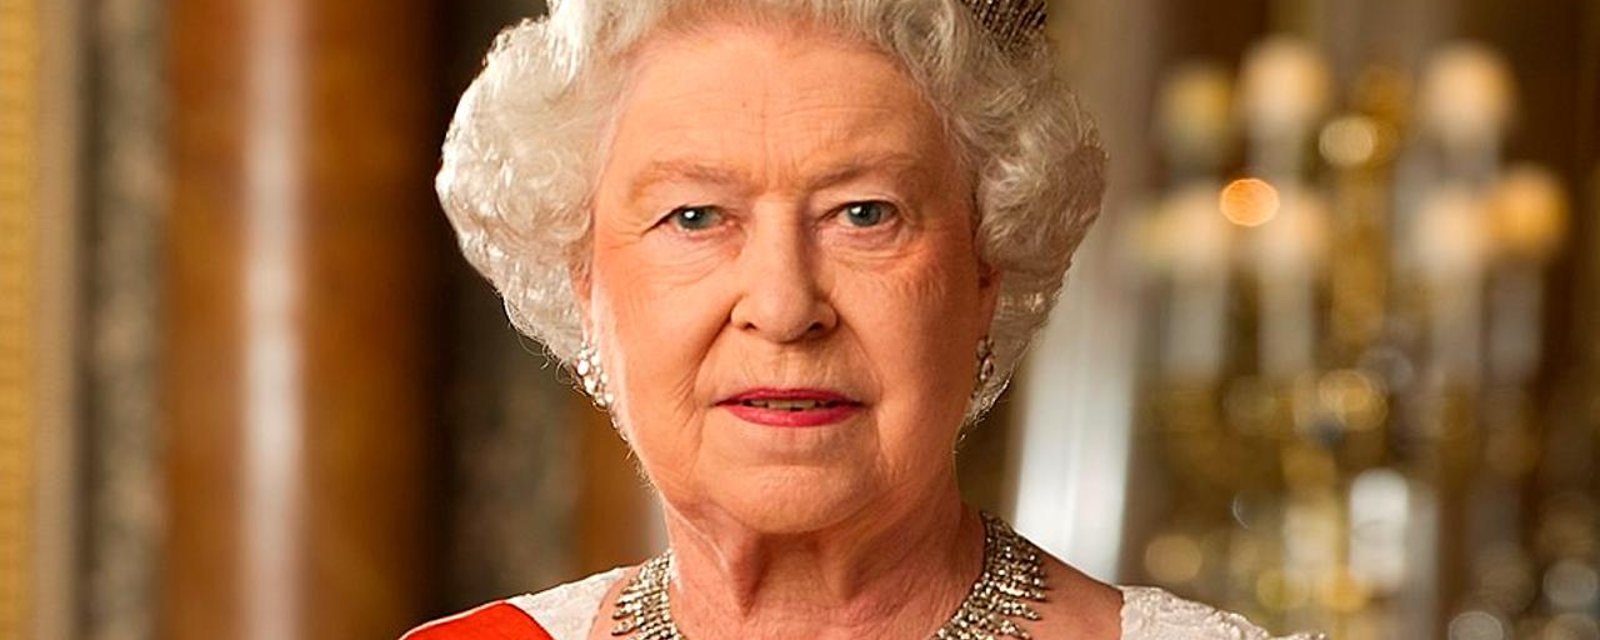 La Monnaie royale canadienne rend hommage à la reine Élizabeth II avec une nouvelle pièce